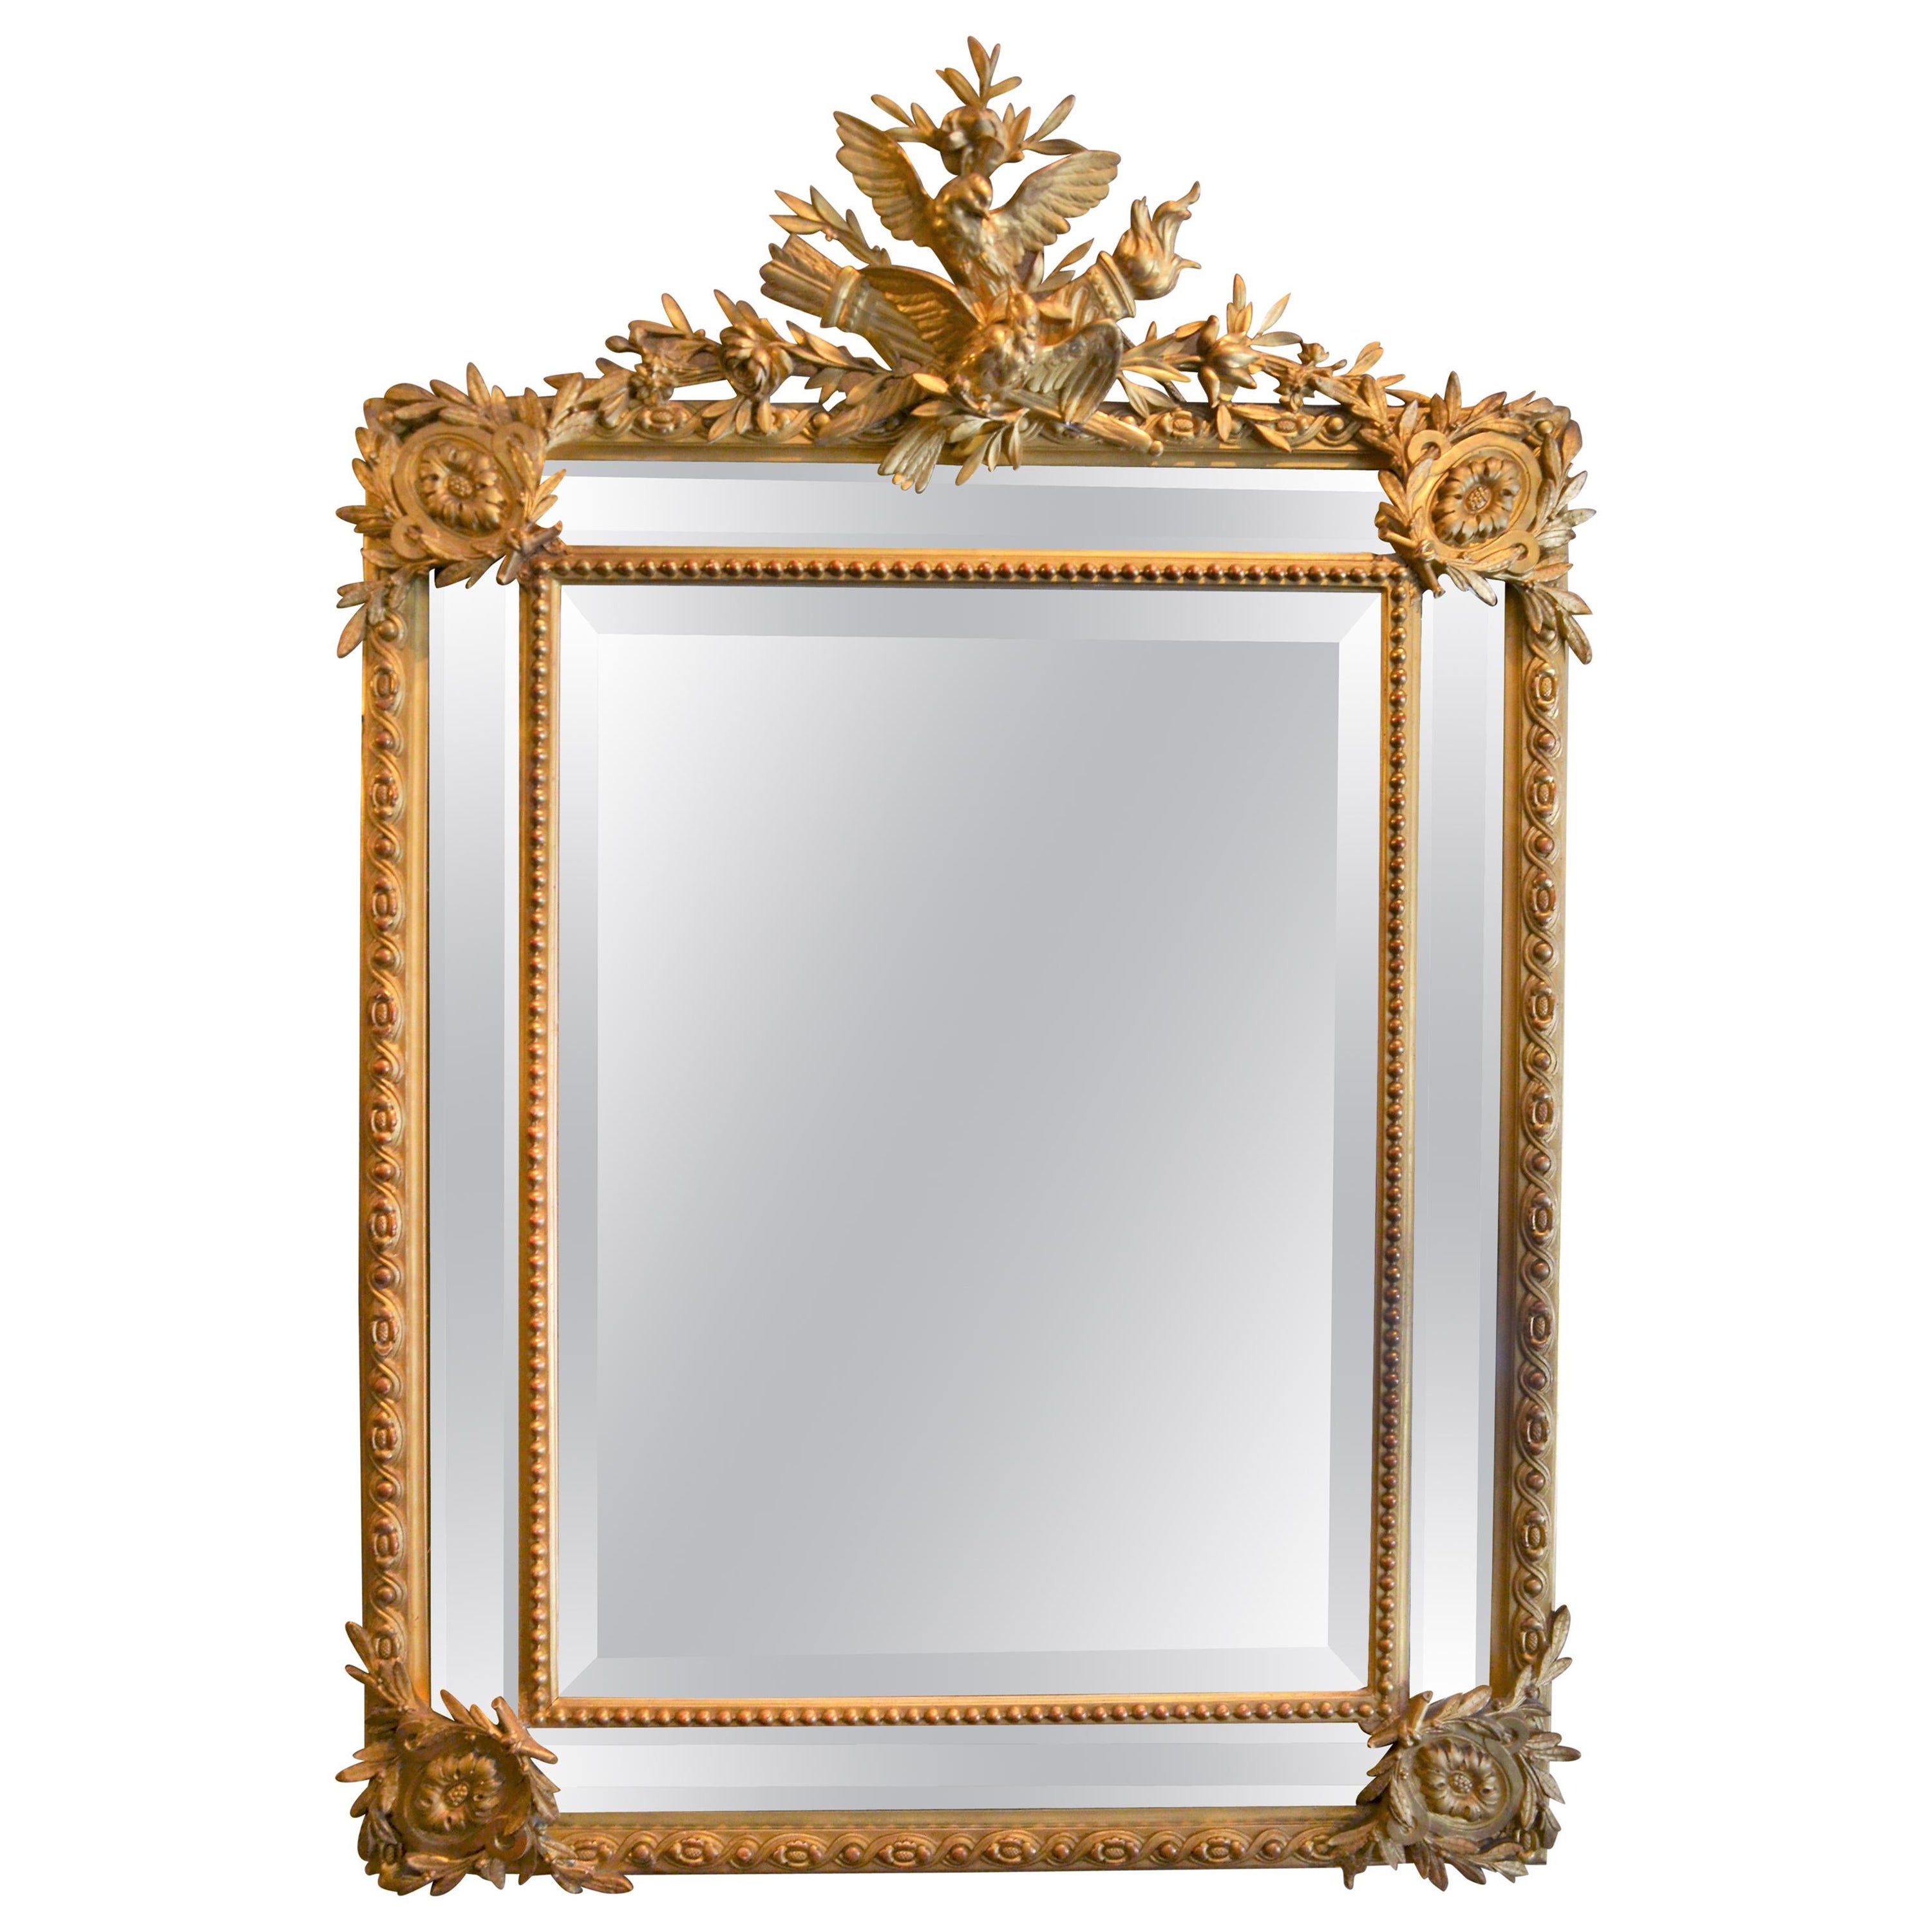 Antique miroir biseauté de style Louis XVI français